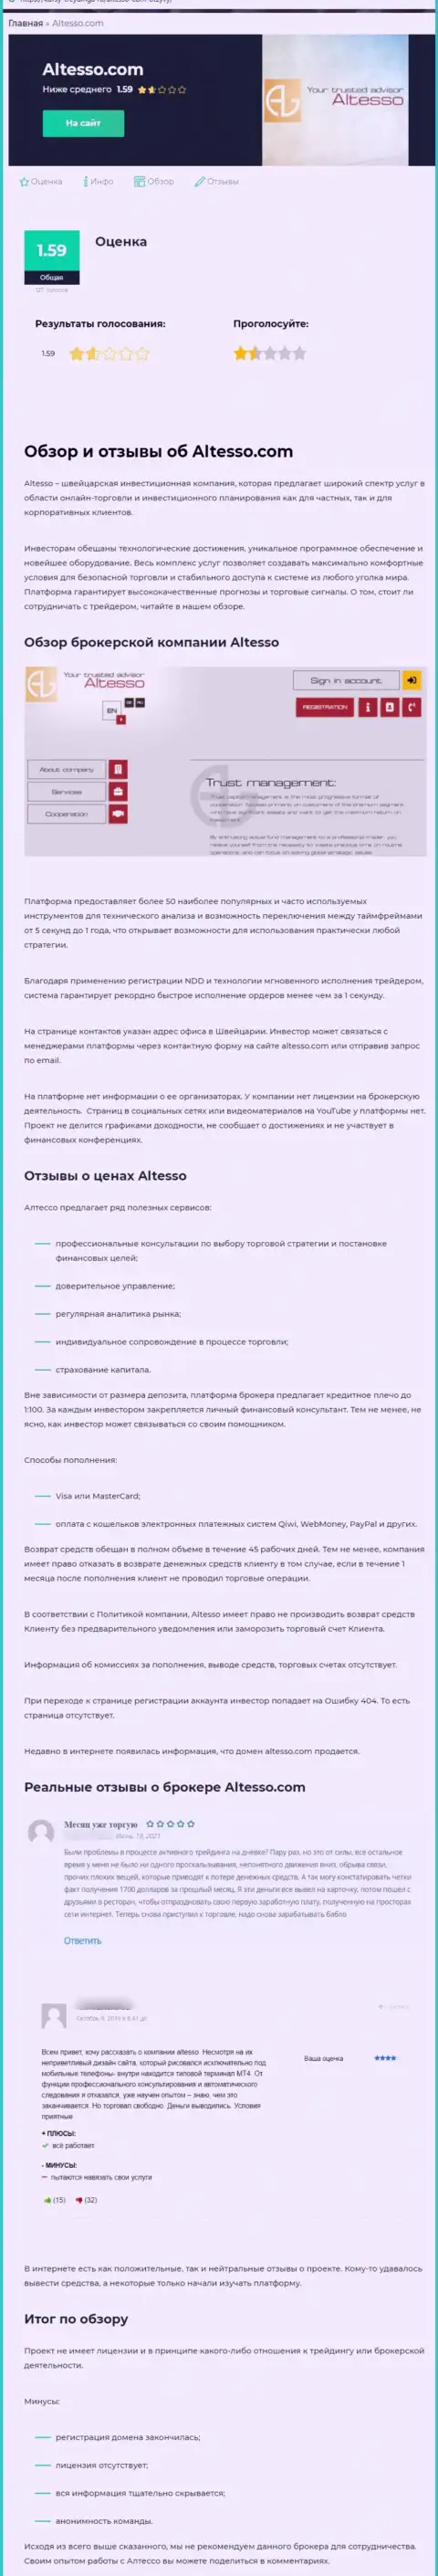 Обзор деяний организации АлТессо Инфо, зарекомендовавшей себя, как internet мошенника